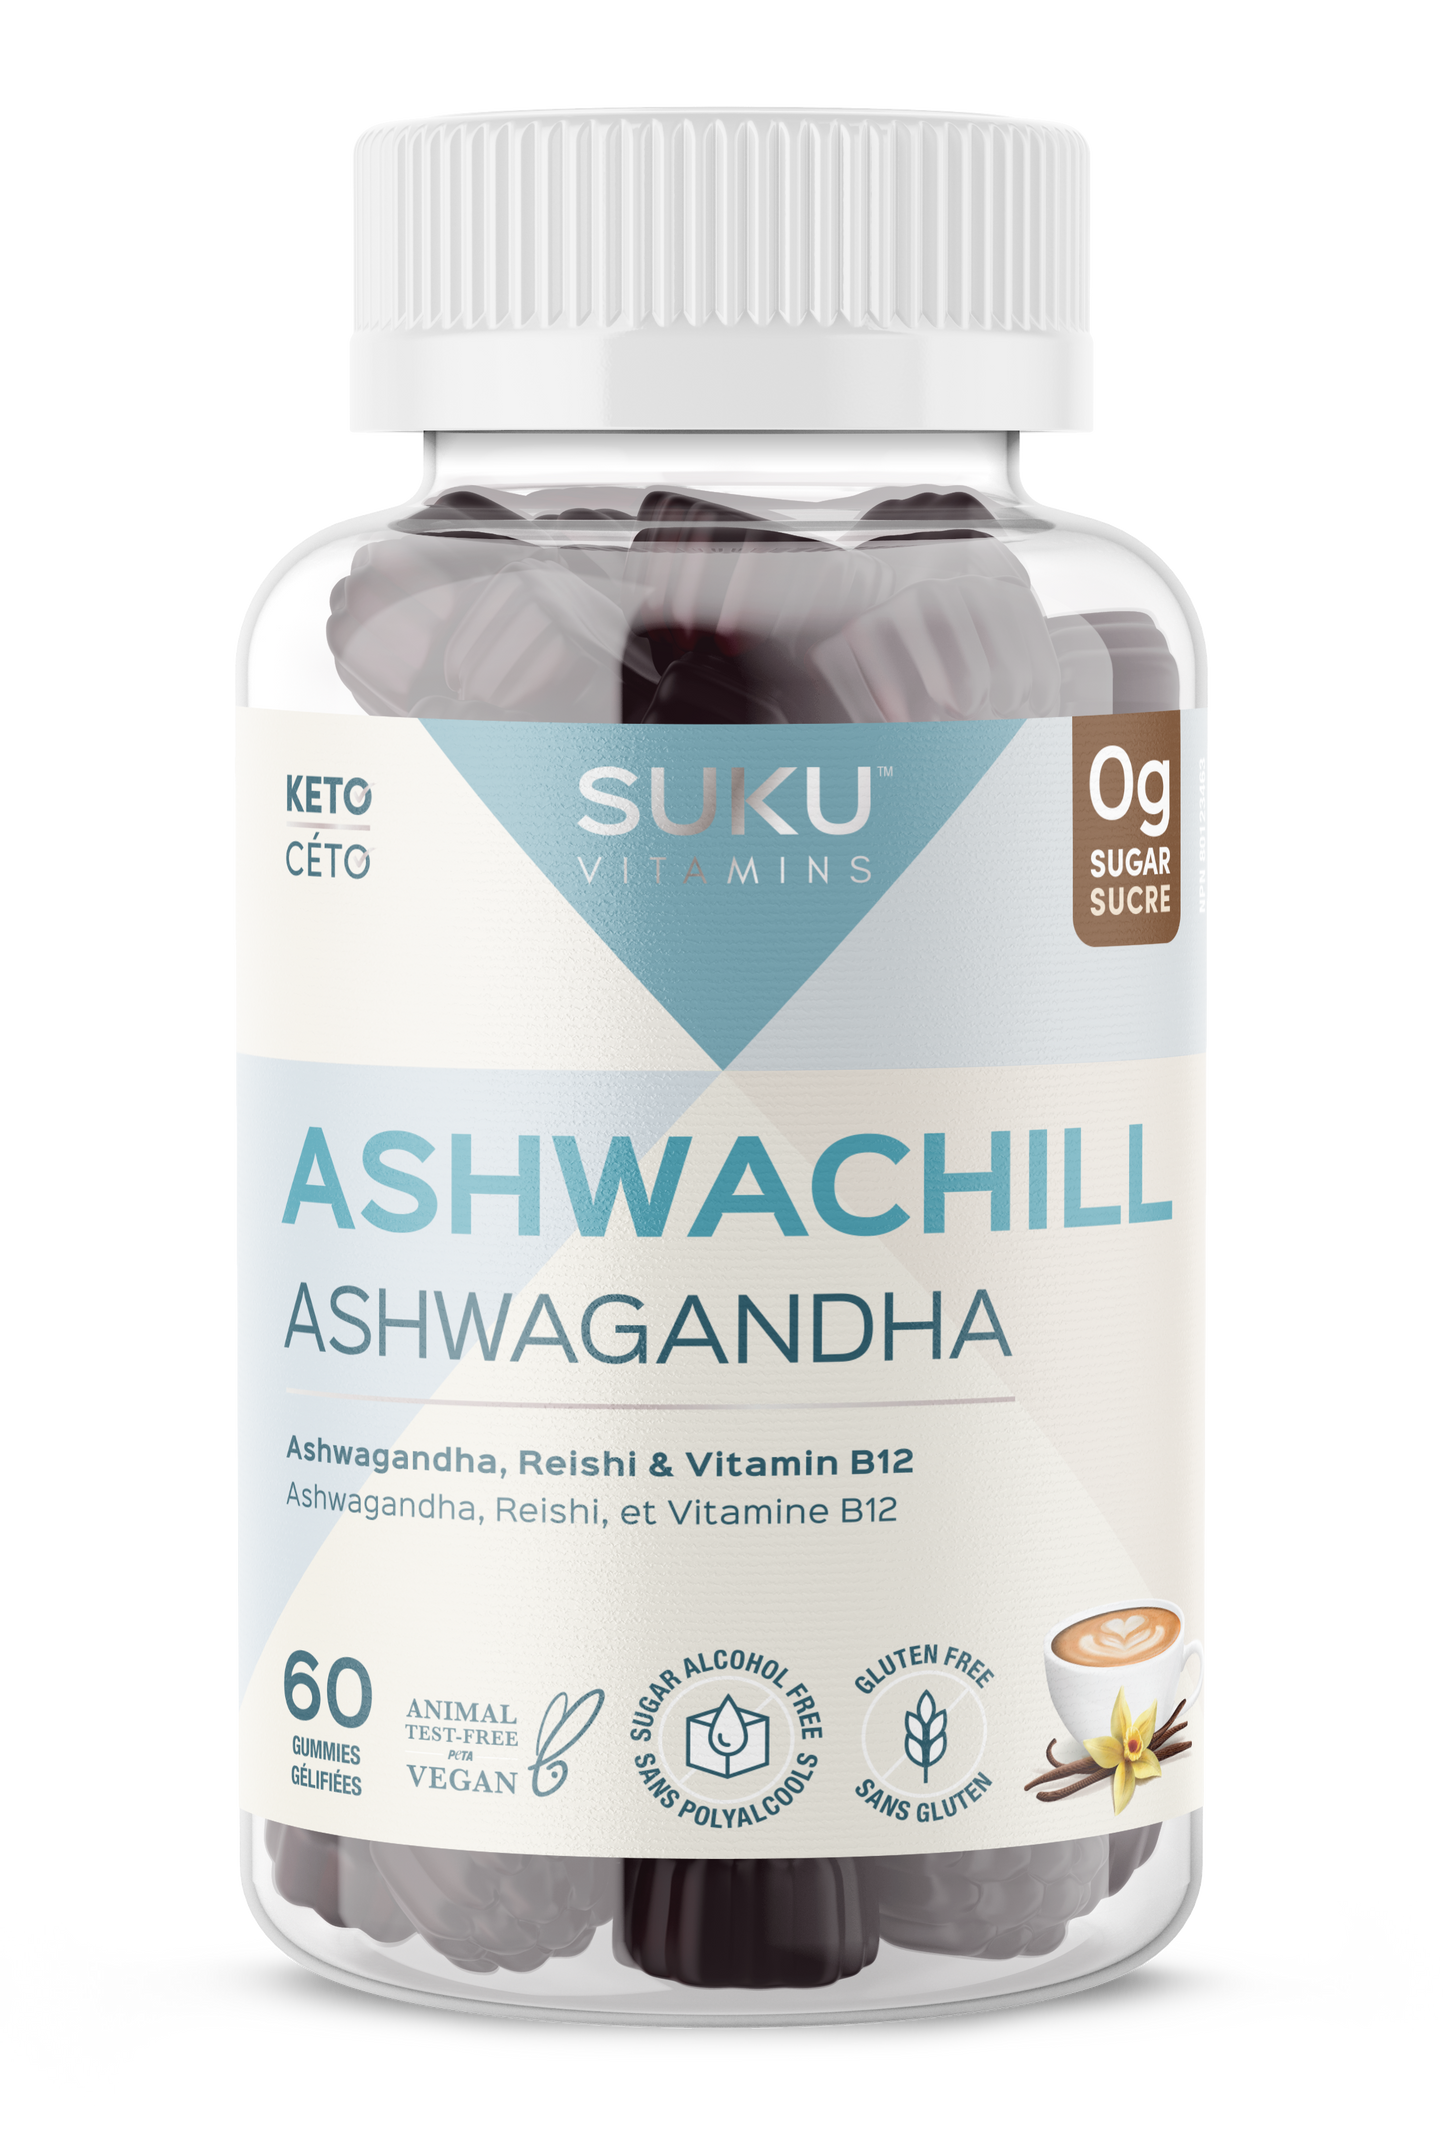 Ashwachill by SUKU Vitamins